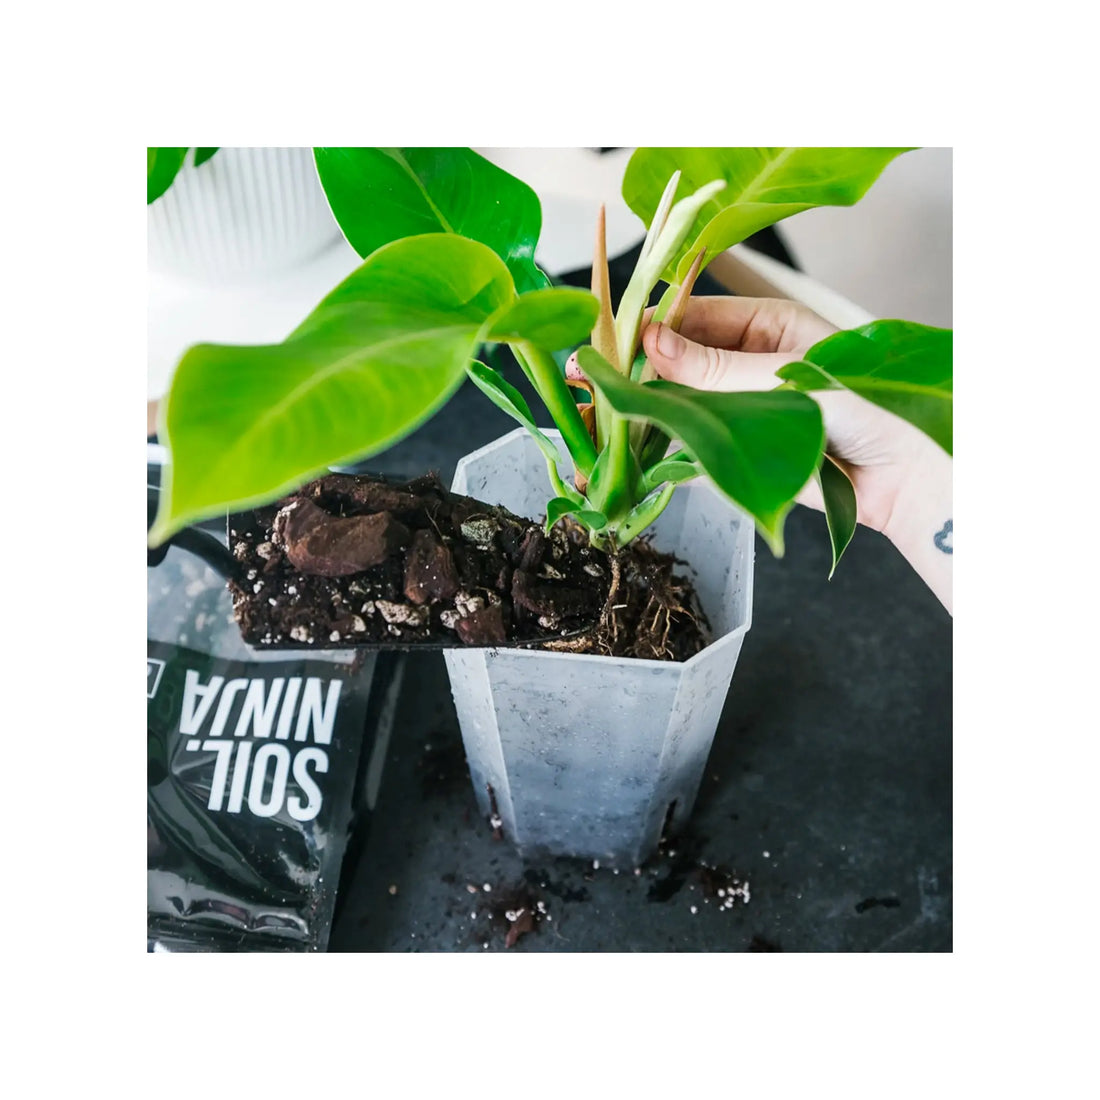 Soil Ninja - Premium Monstera &amp; Philodendron Blend Soil Ninja